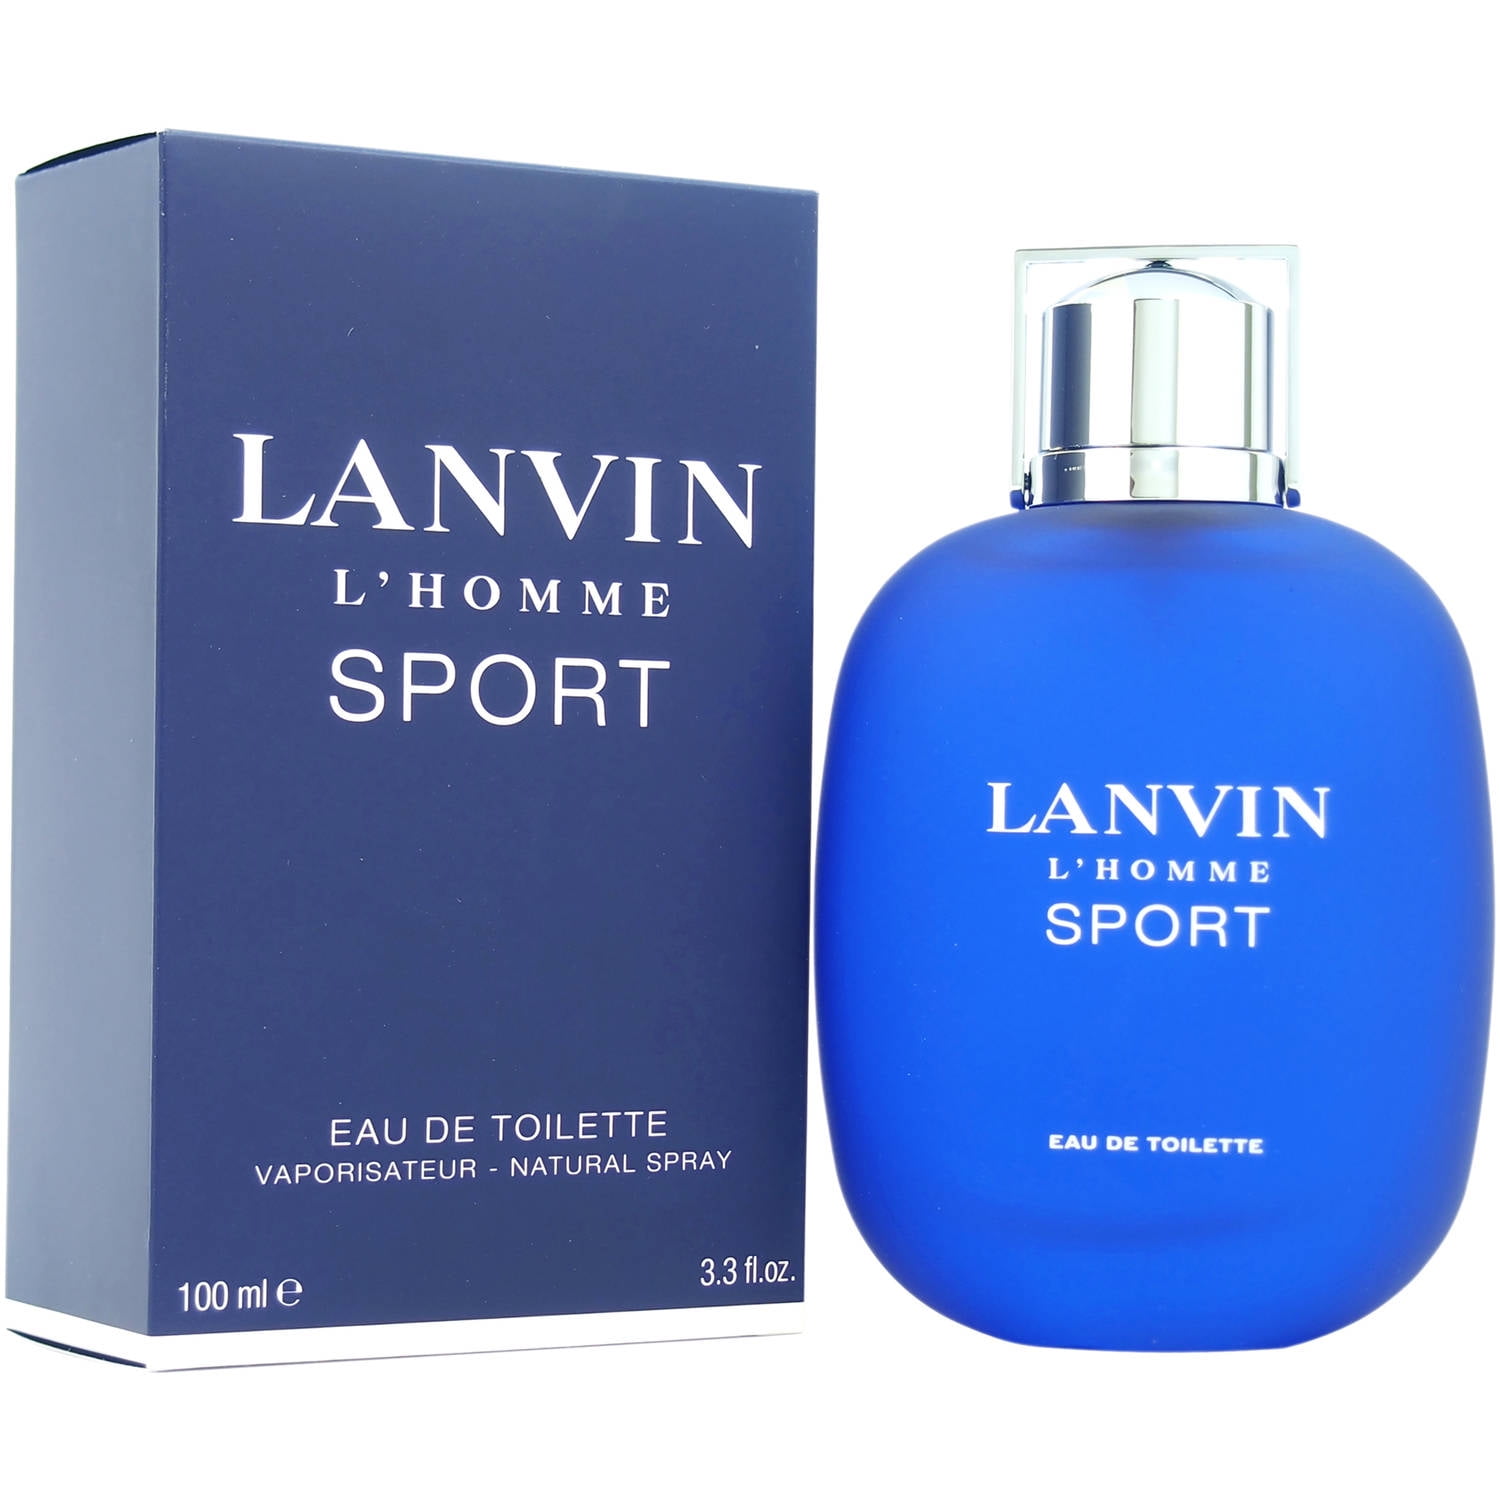 Lanvin L'homme Sport Cologne Review 